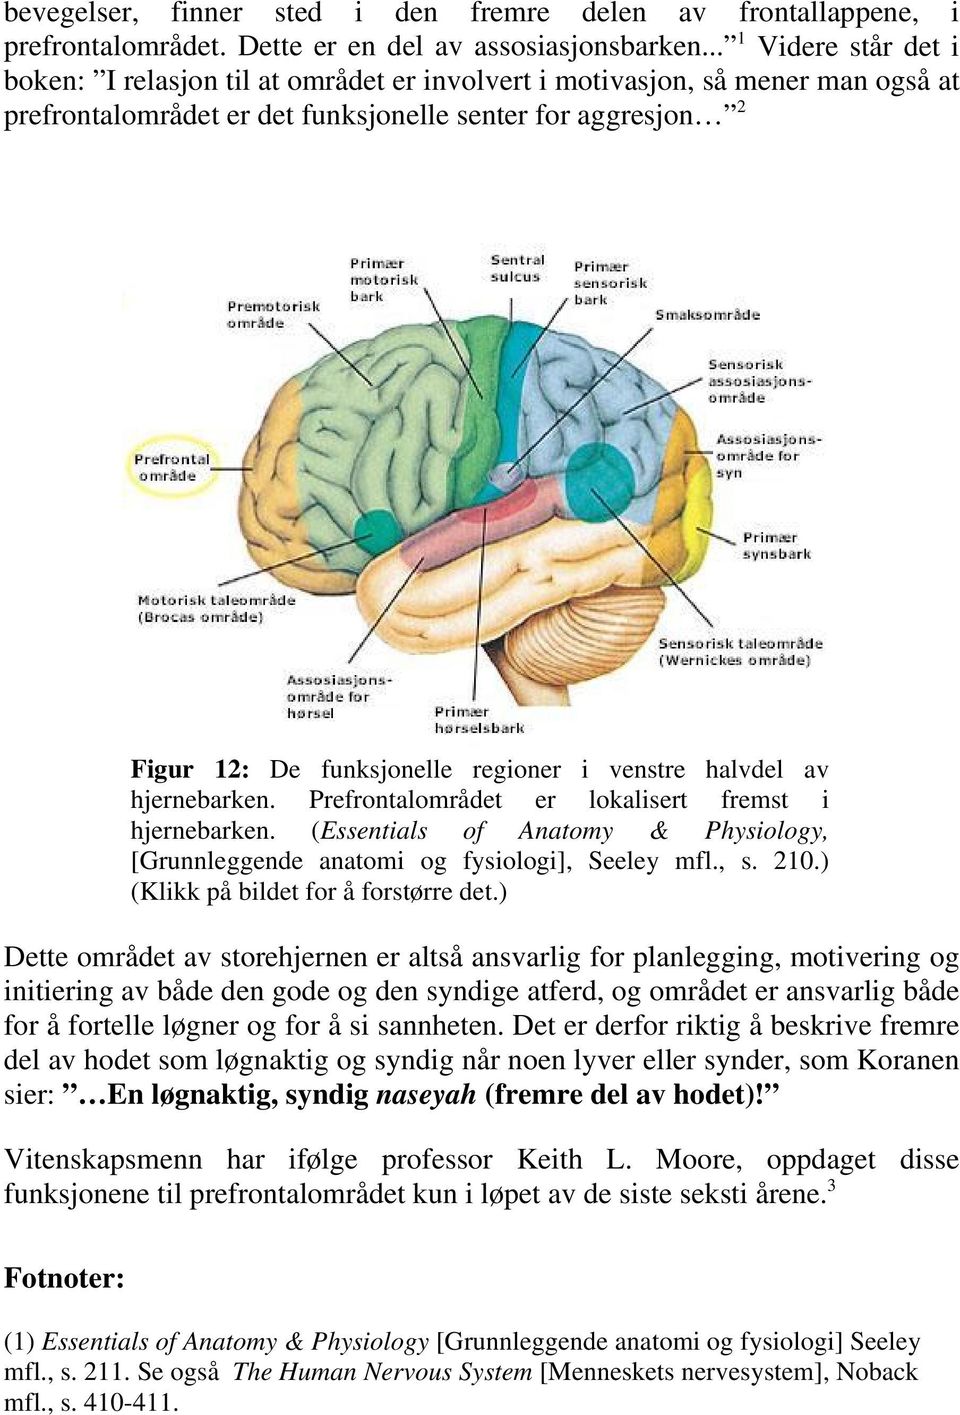 i venstre halvdel av hjernebarken. Prefrontalområdet er lokalisert fremst i hjernebarken. (Essentials of Anatomy & Physiology, [Grunnleggende anatomi og fysiologi], Seeley mfl., s. 210.